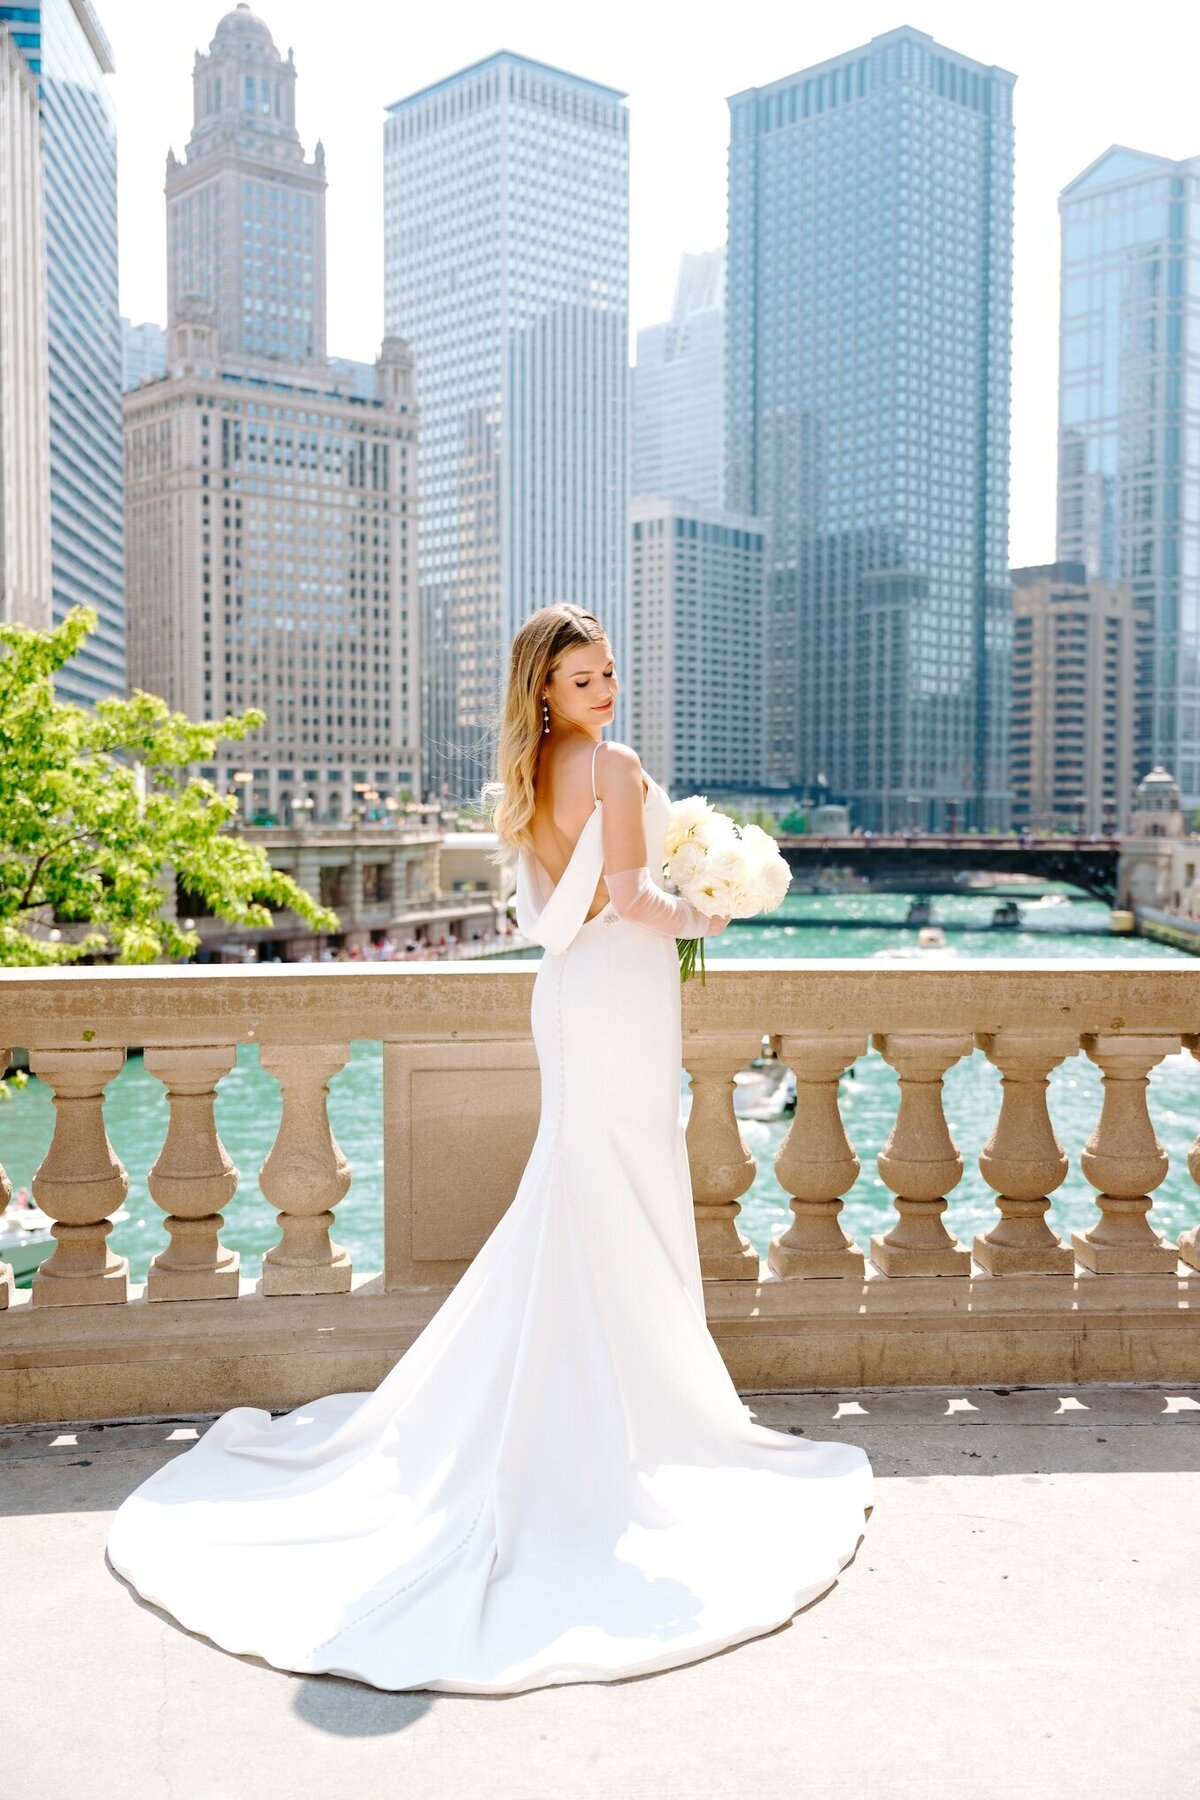 marissa-kelly-photography-destination-wedding-photographer-chicago-new-york-worldwide-rylee-jamal-walden-chicago-wedding-portfolio8